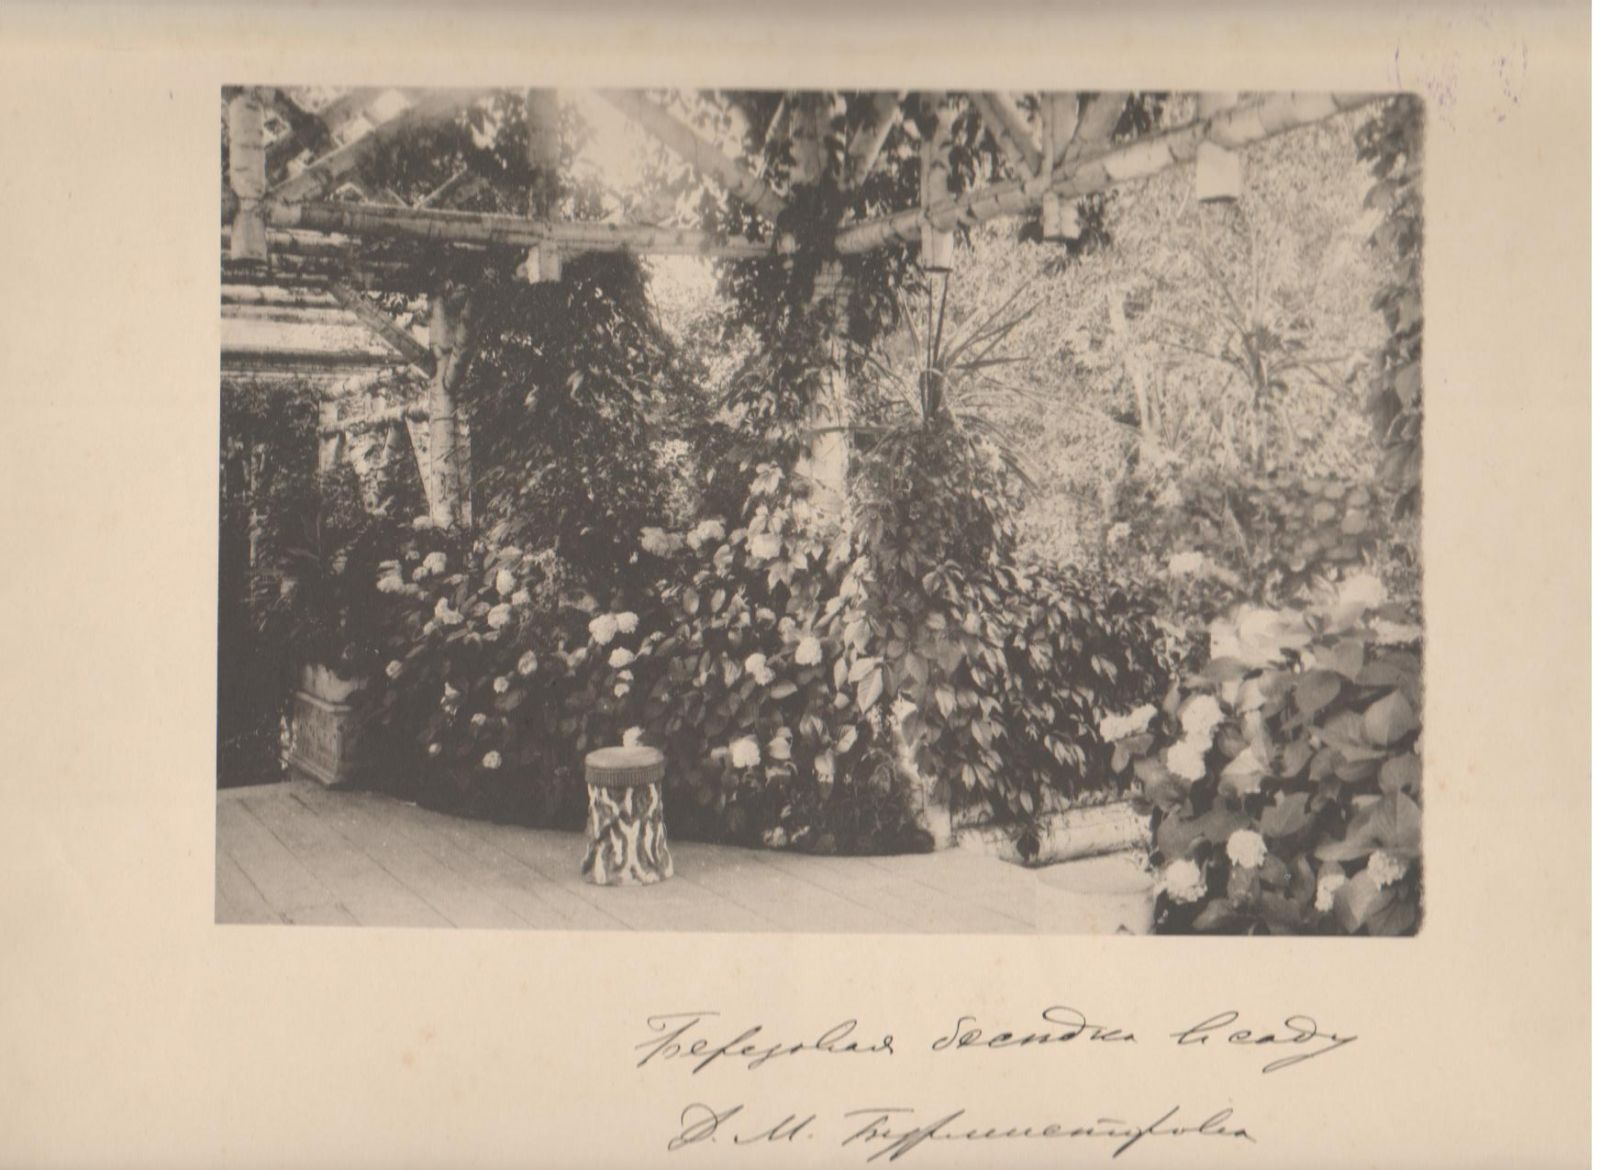 Березовая беседка в саду Д.М. Бурмистрова, 1894 г.